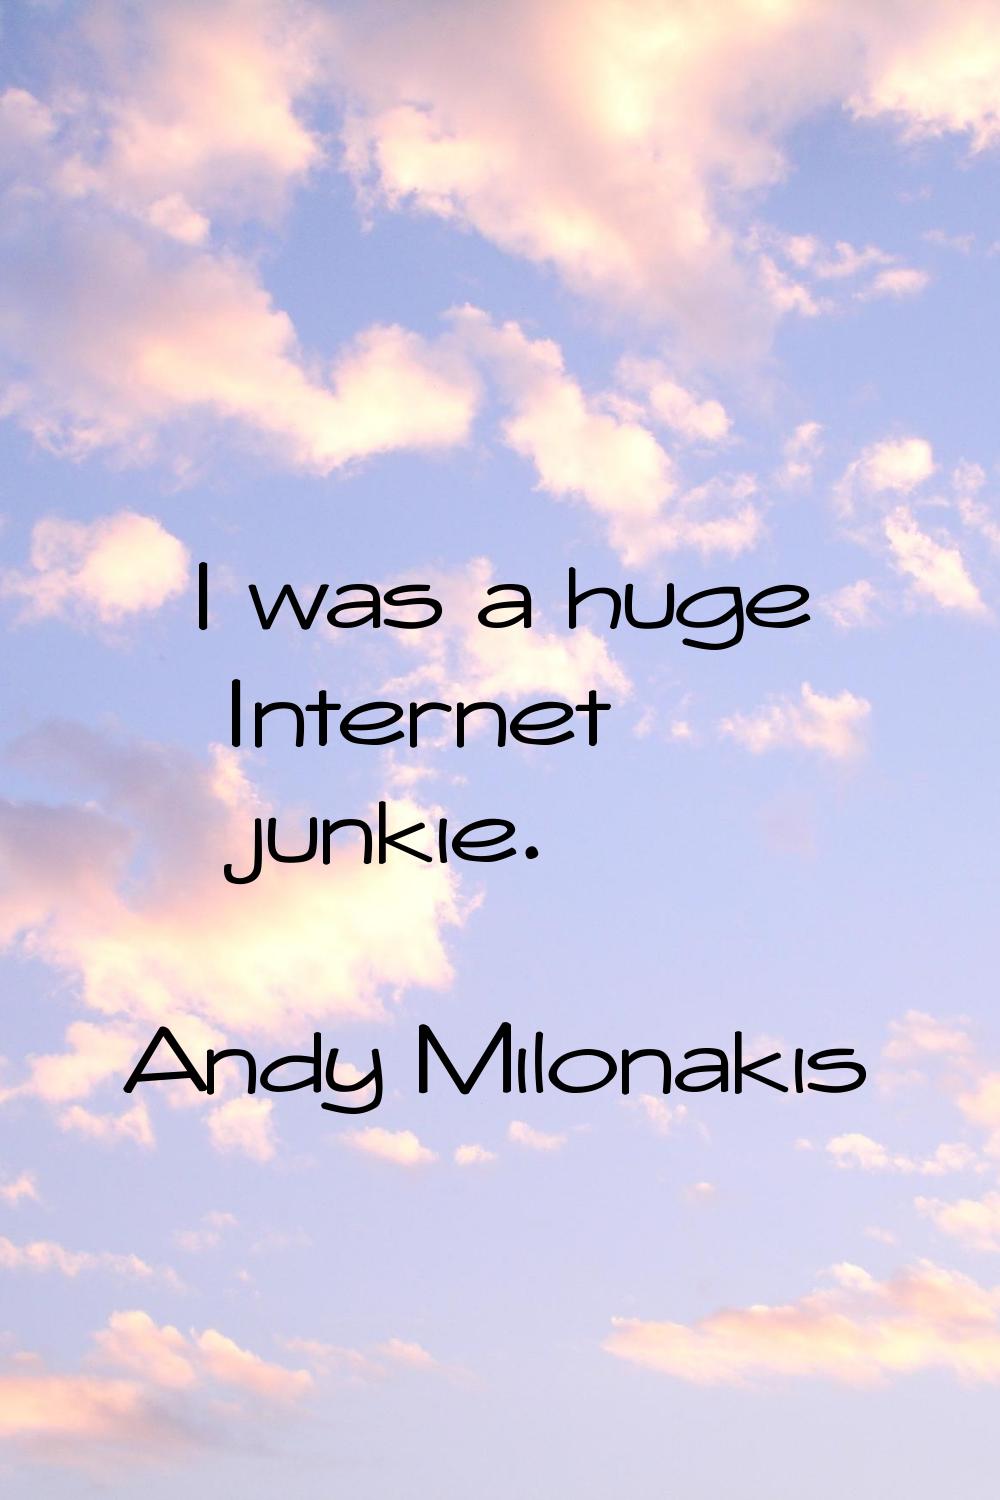 I was a huge Internet junkie.